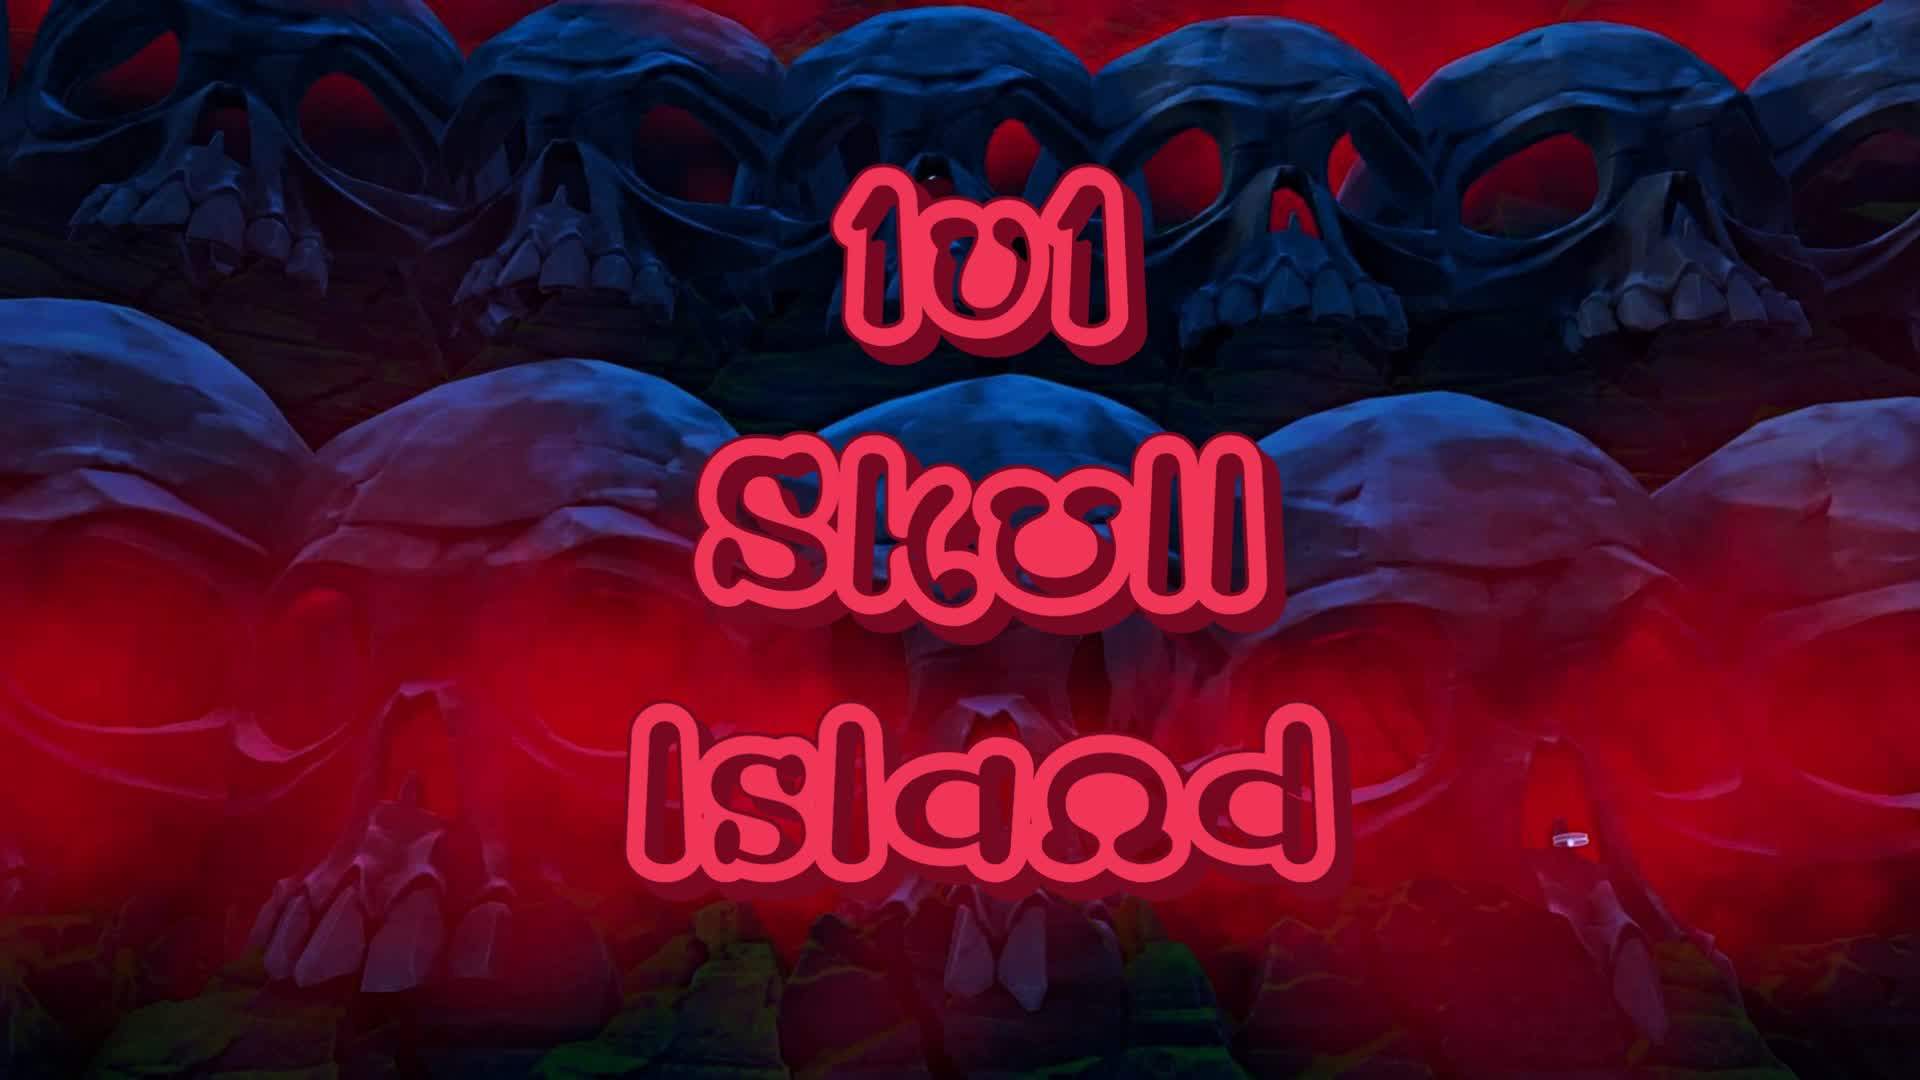 1v1 x 4 - Skull Island -